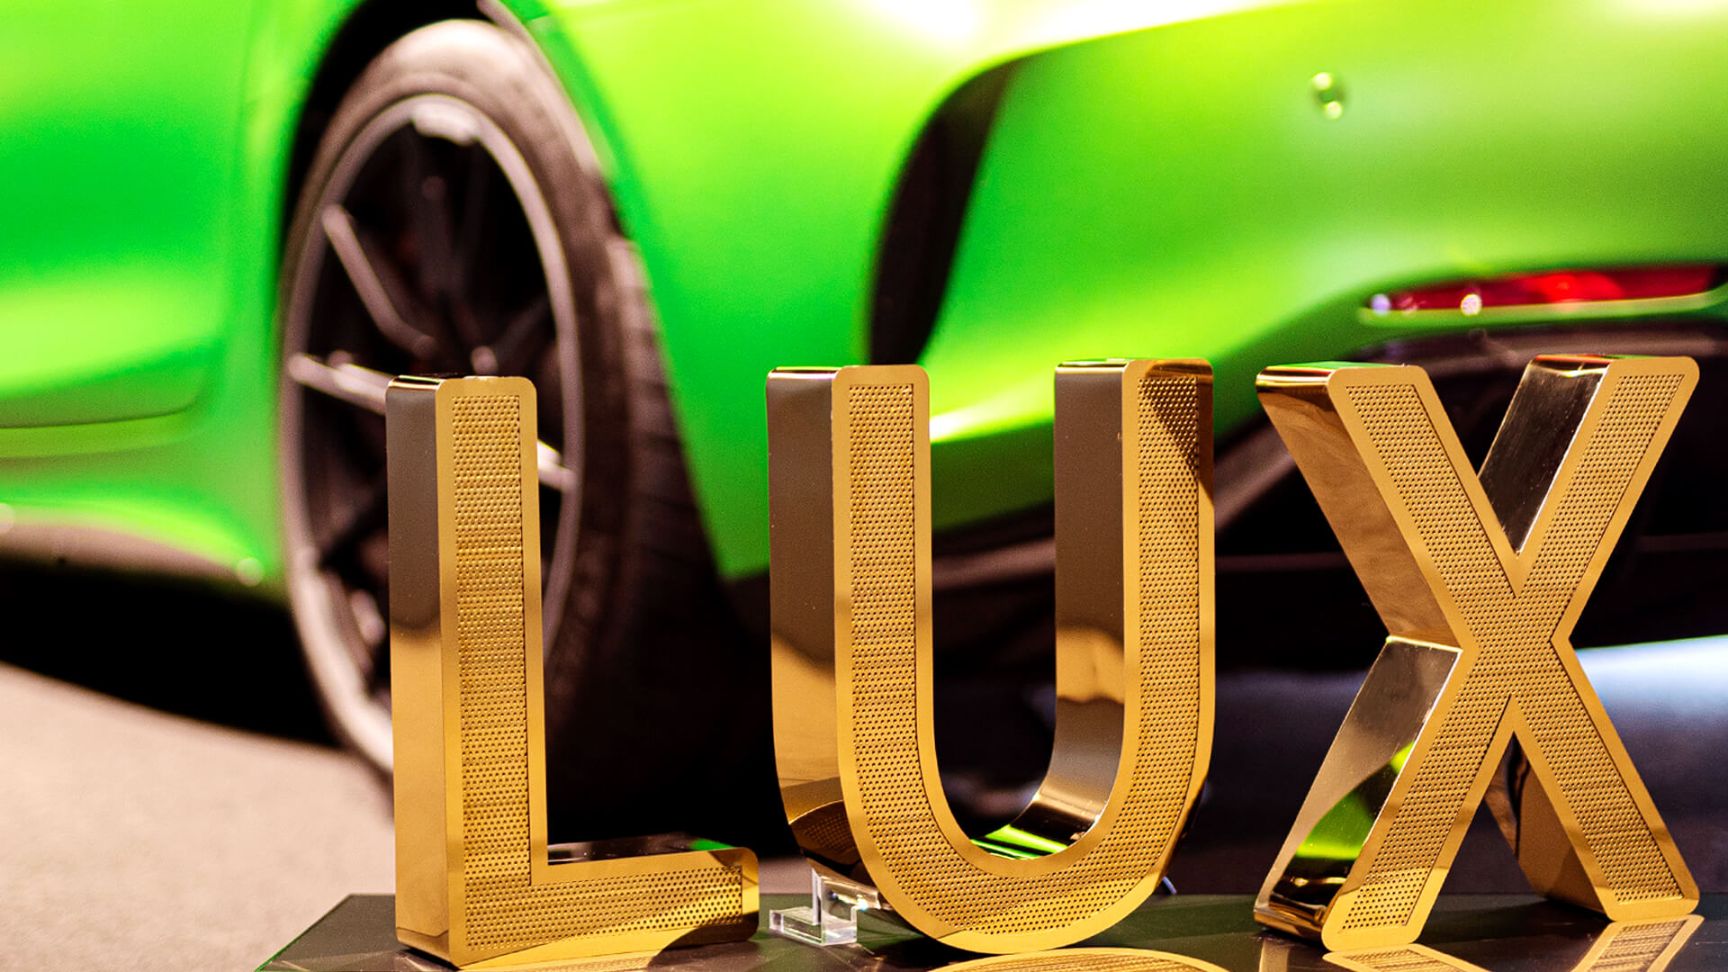 Lettres en acier inoxydable perforé LUX - Lettres LUX en acier inoxydable perforé brillant doré dans le showroom Mercedes